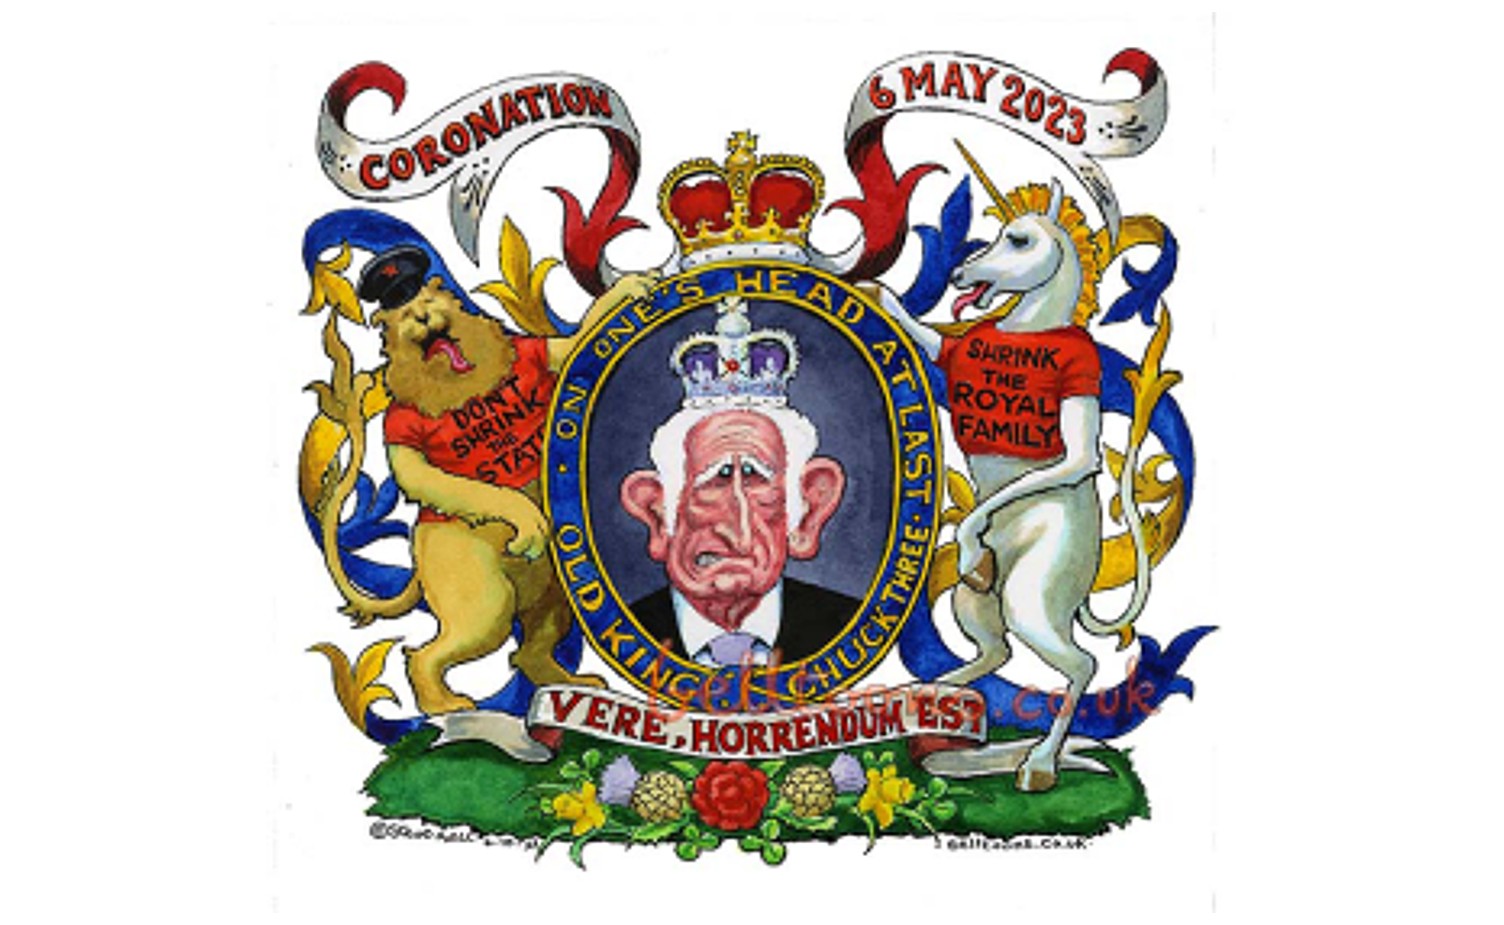 Le couronnement du Roi Charles 3 vu par le caricaturiste anglais Steve Bel